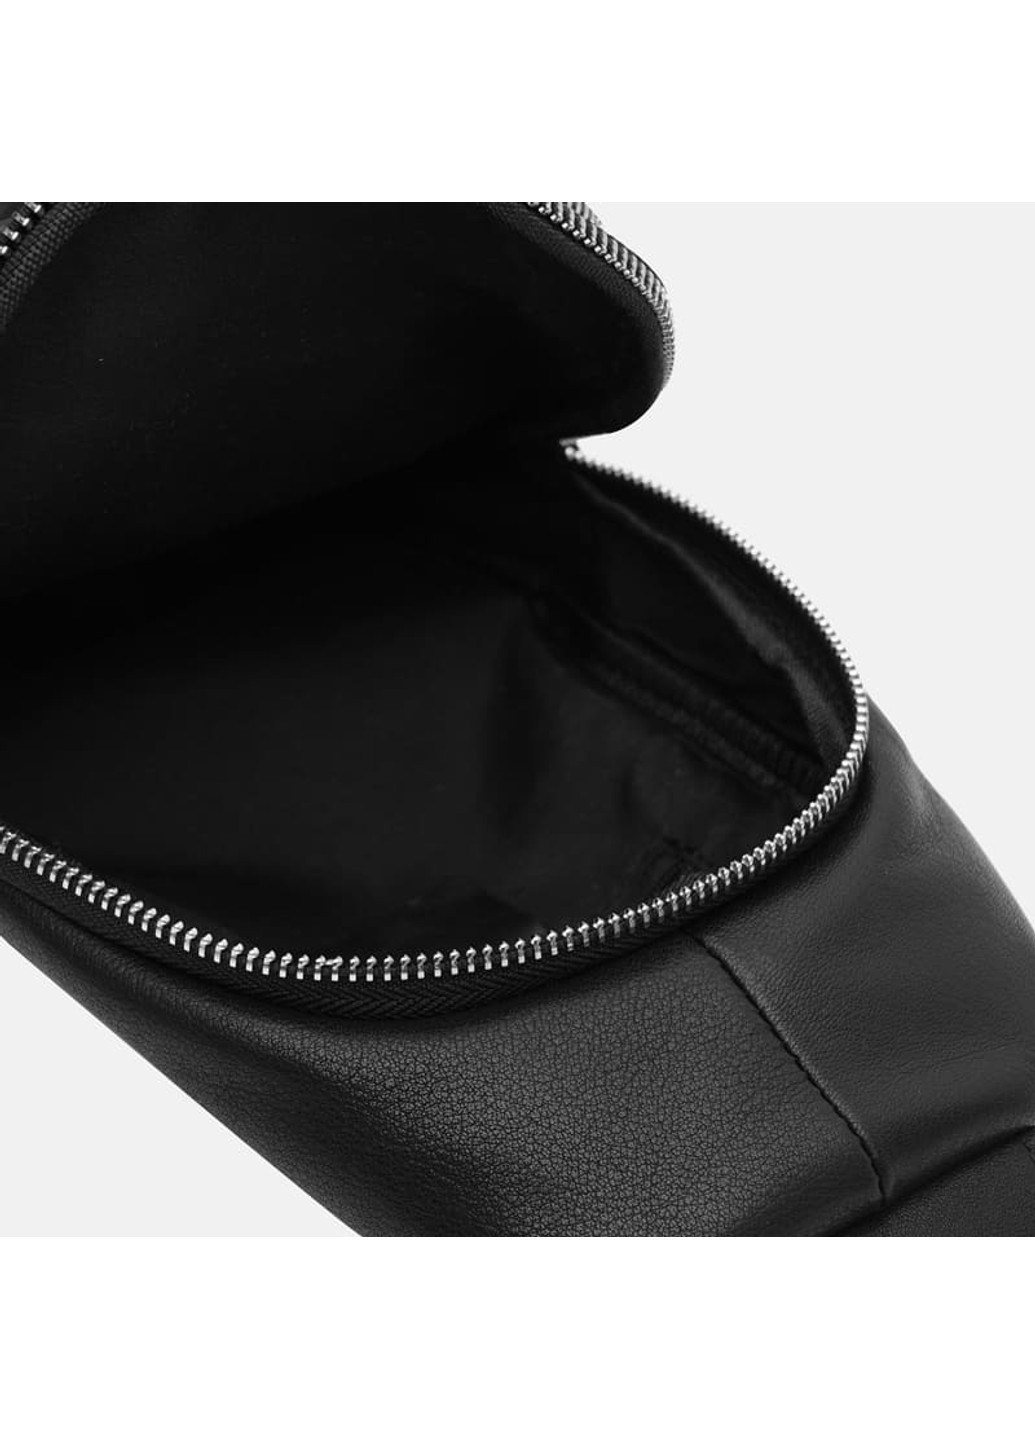 Мужской кожаный рюкзак K16040-black Ricco Grande (271998060)